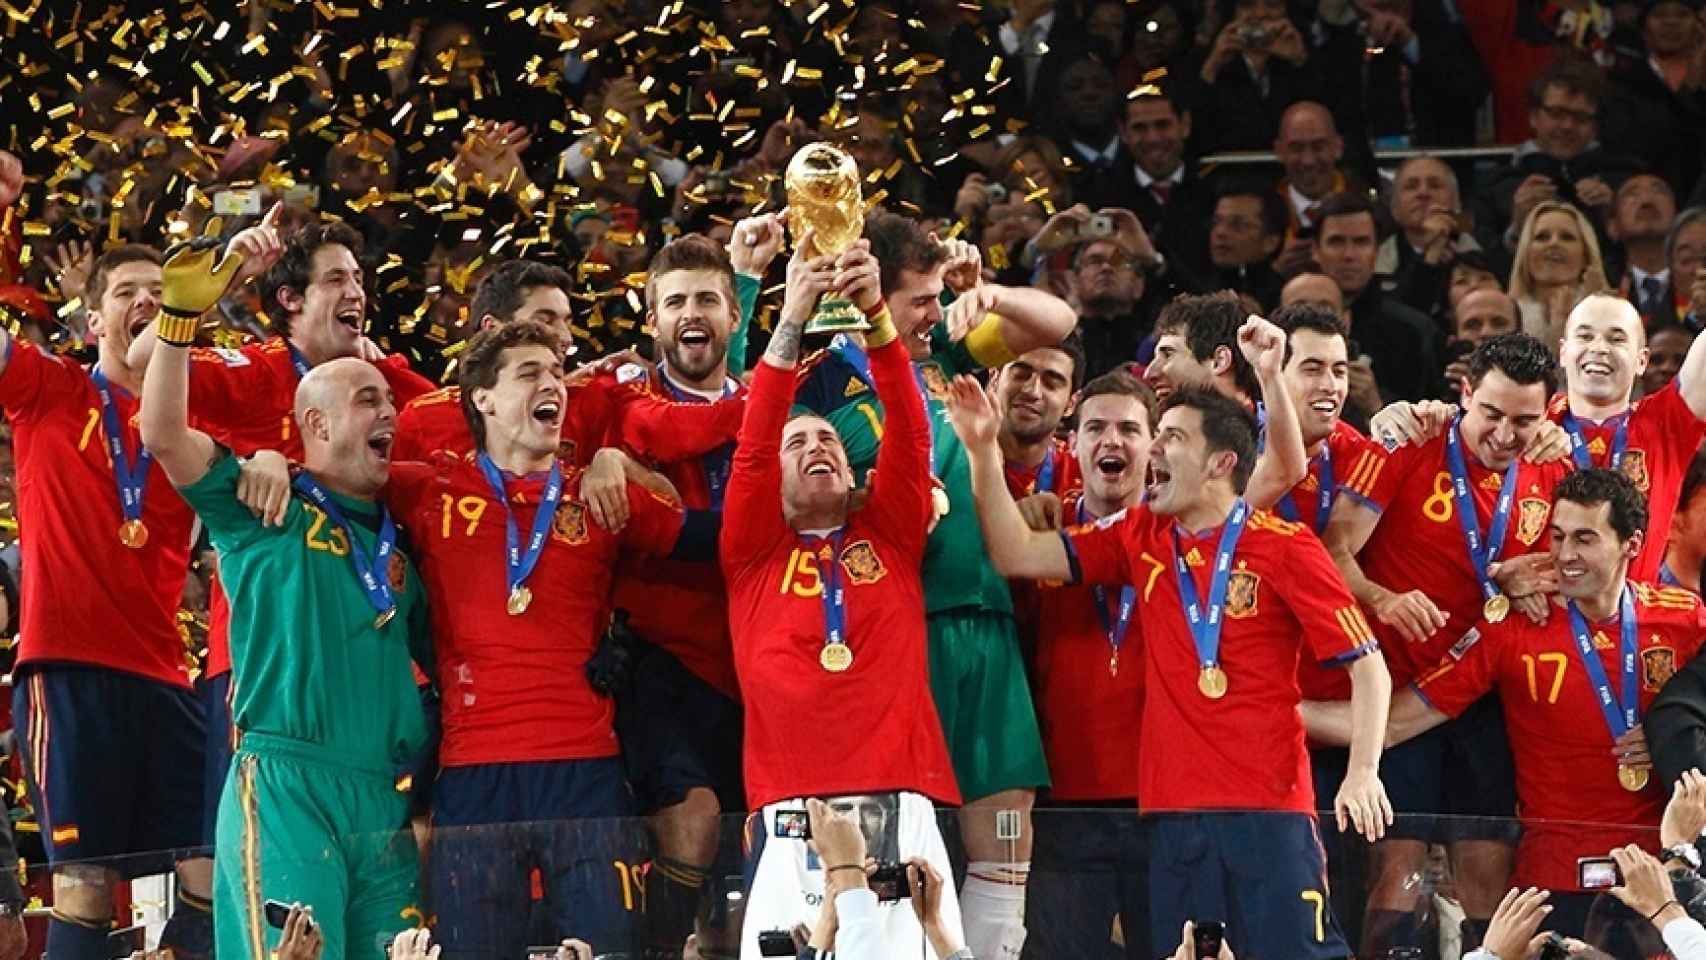 Piqué, en el centro junto a la copa, celebra la victoria en el Mundial de Sudáfrica de 2010 con sus compañeros de la selección española.